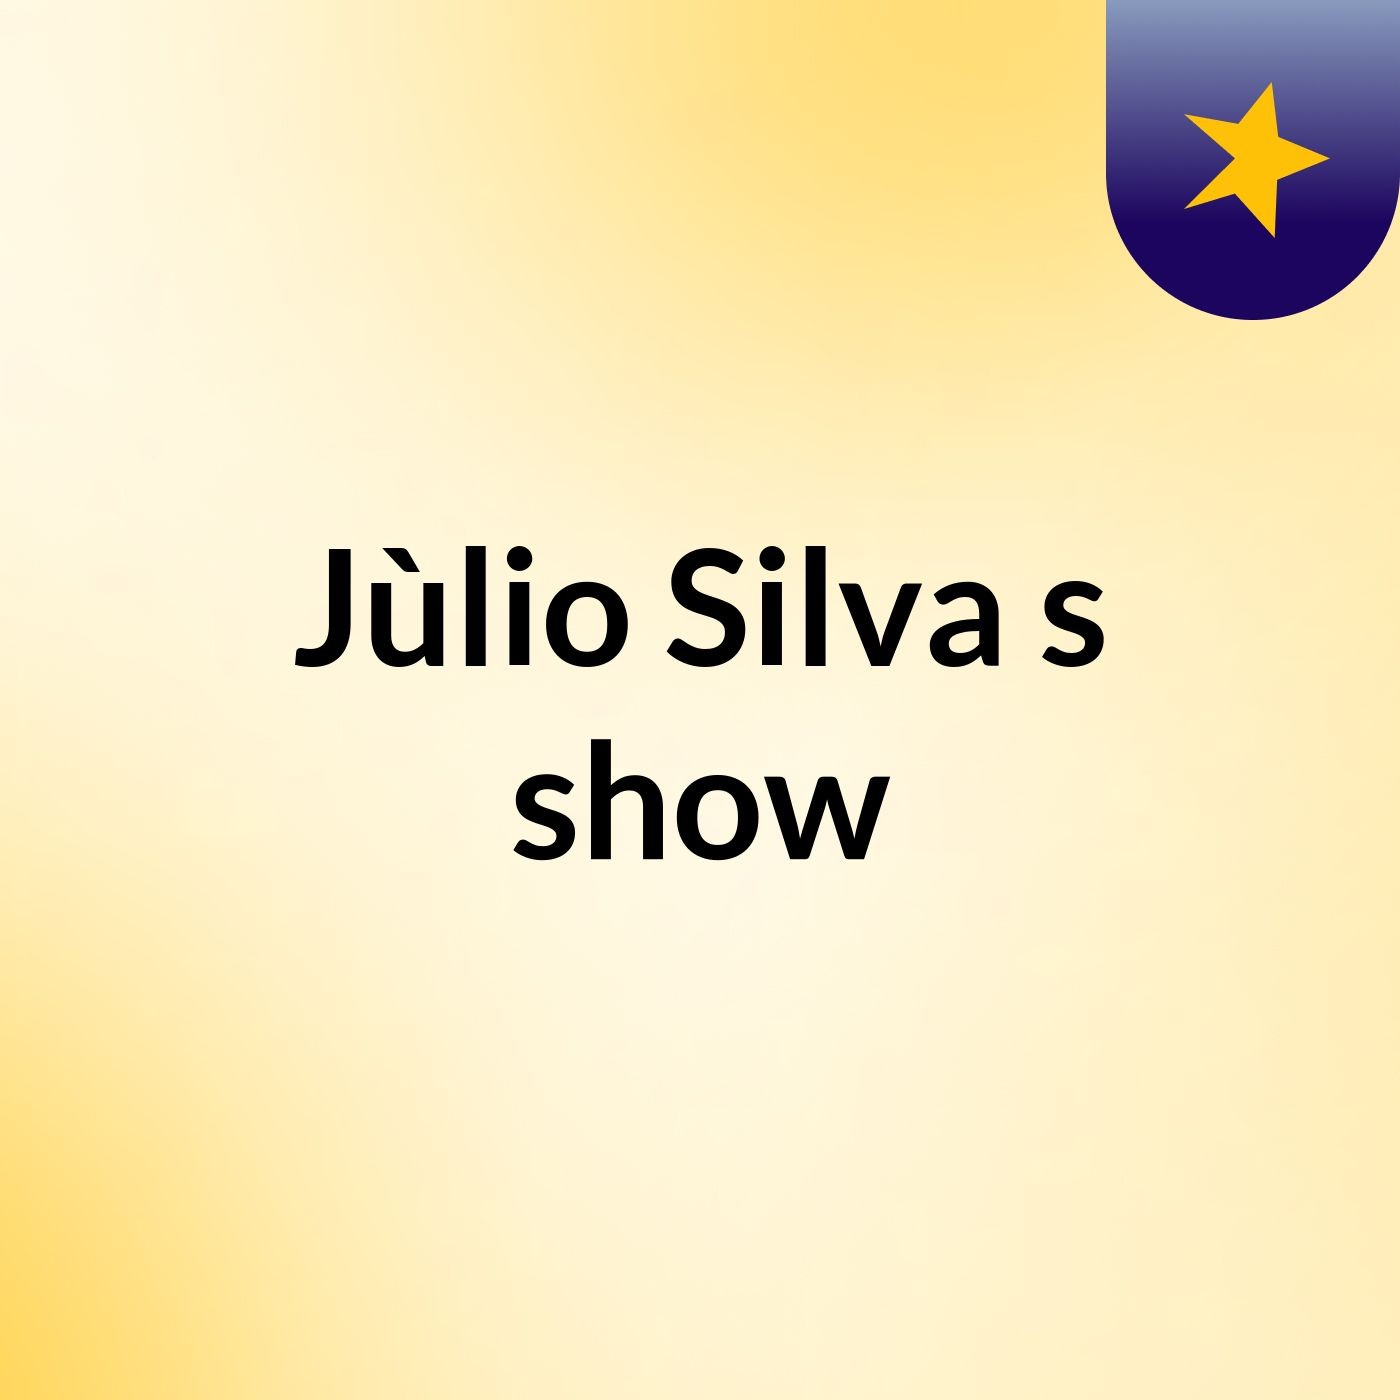 Jùlio Silva's show